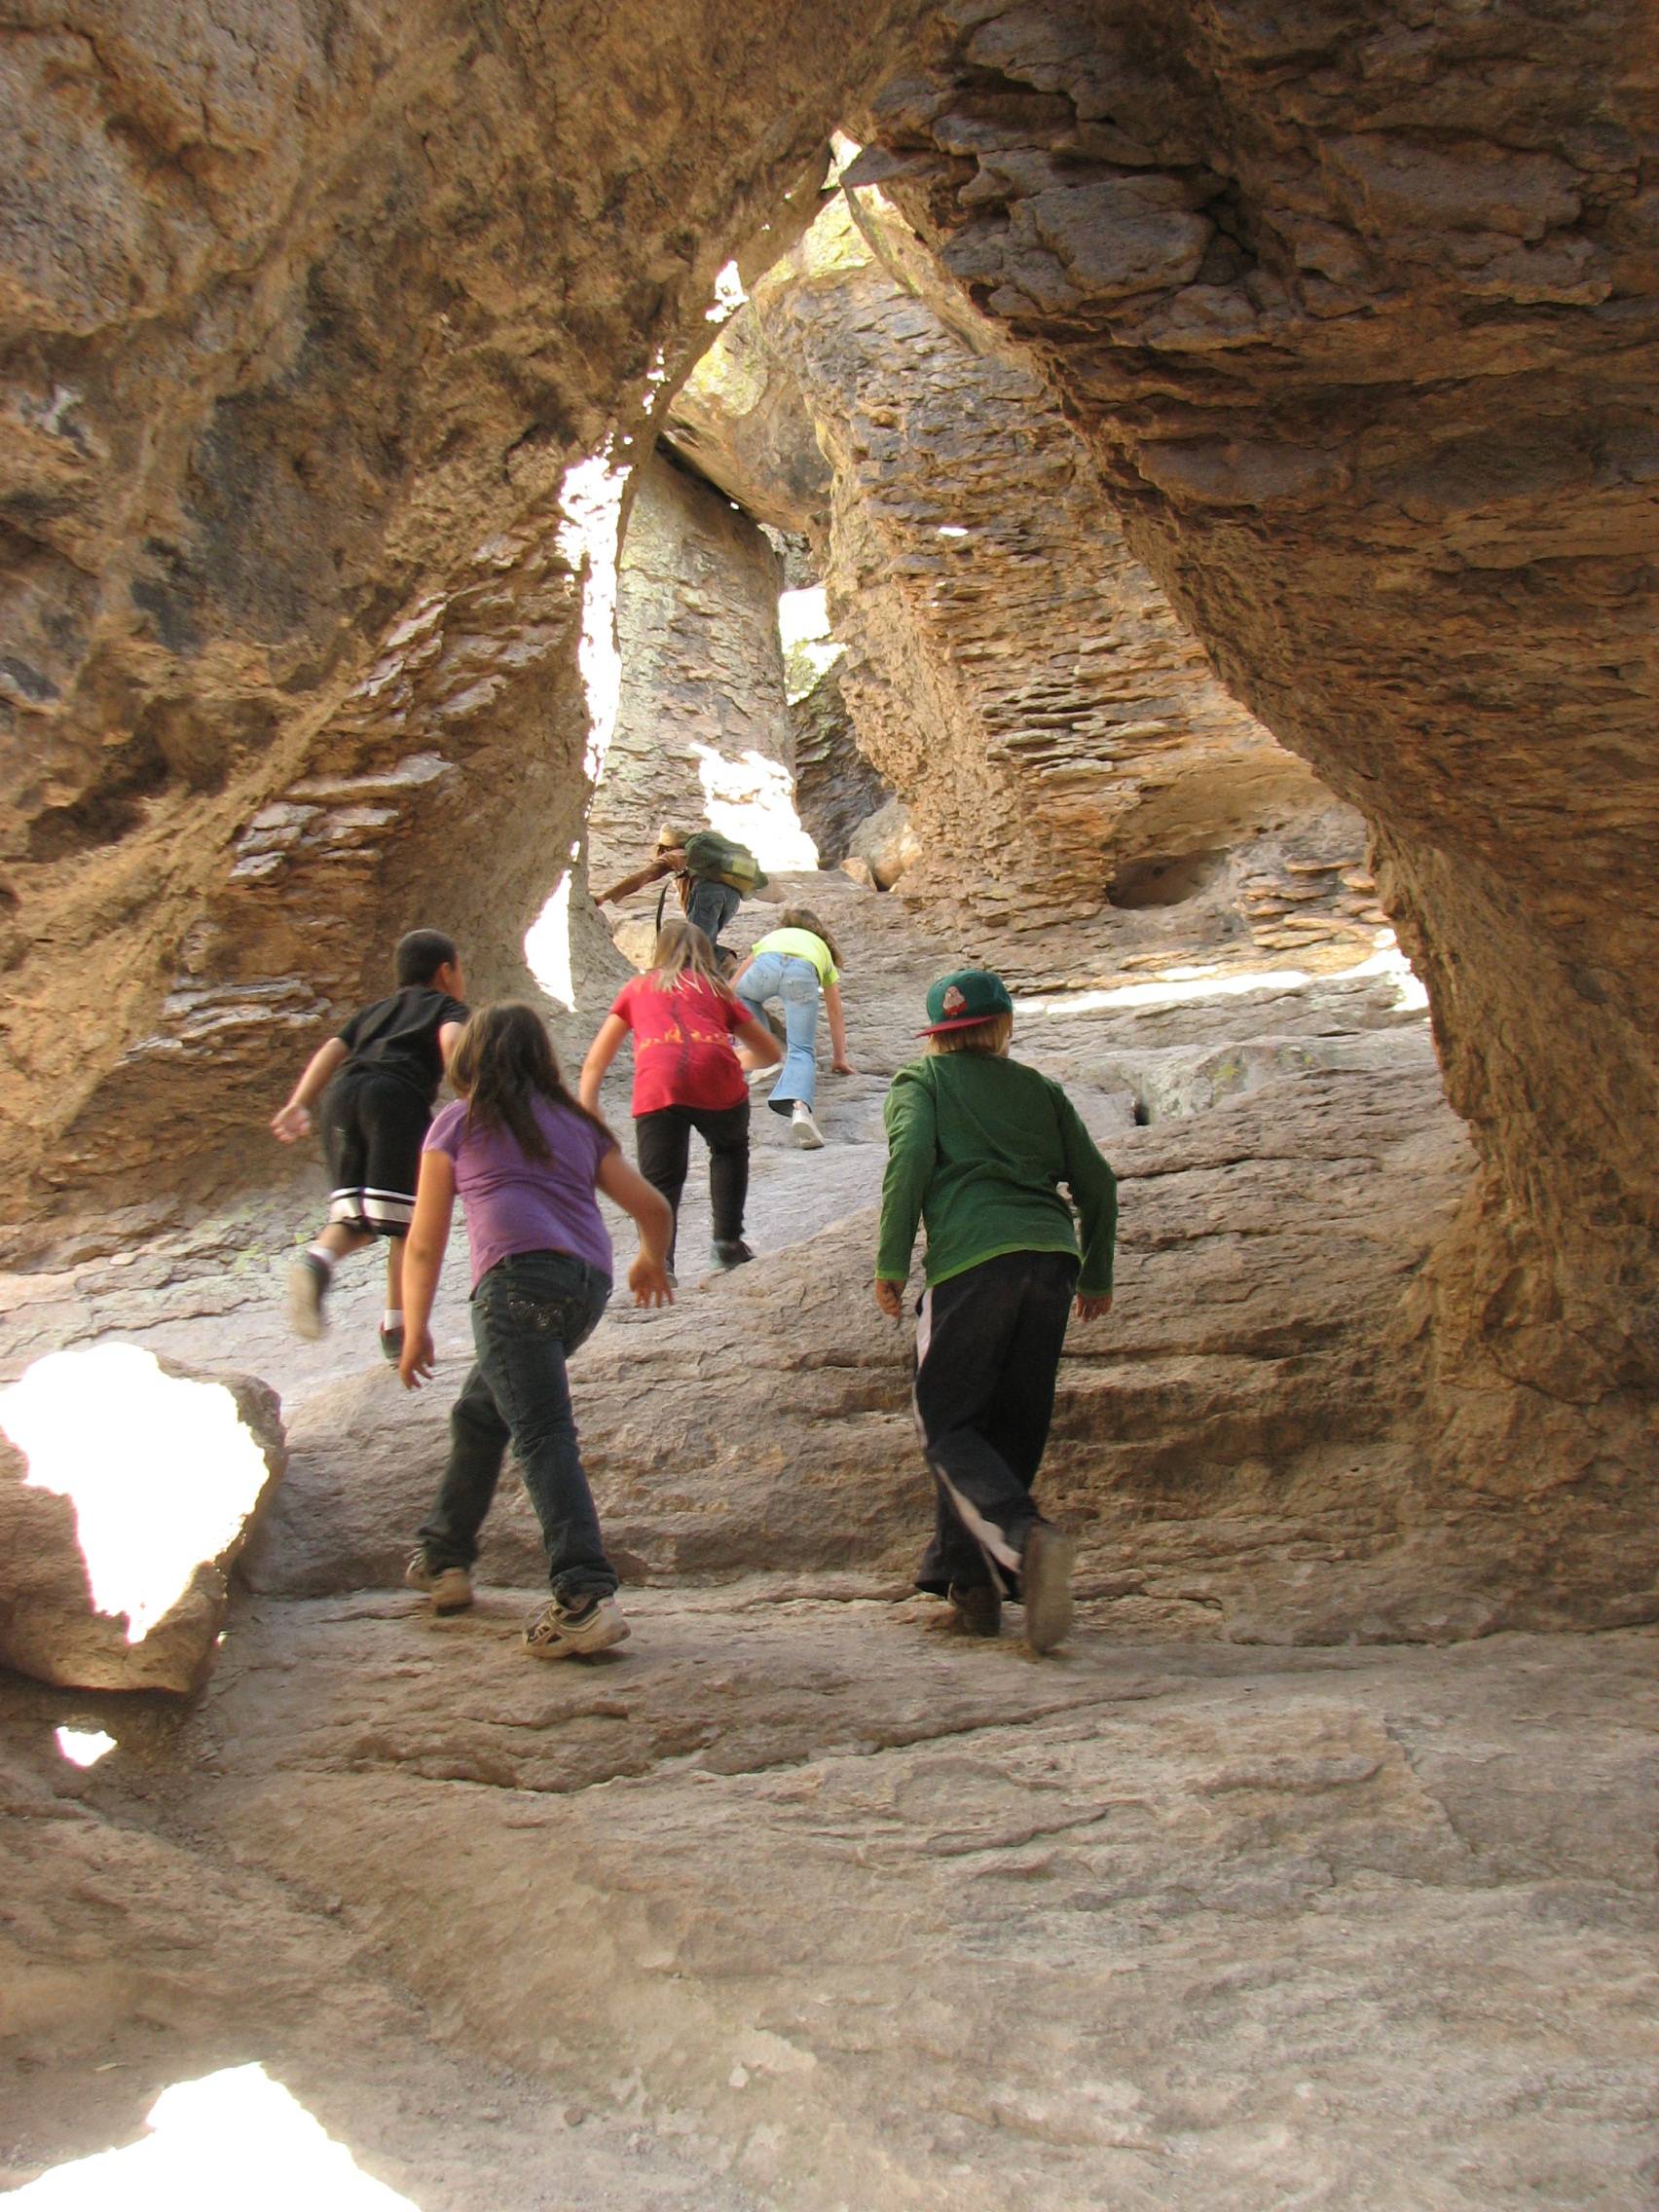 Children climb through rock archways